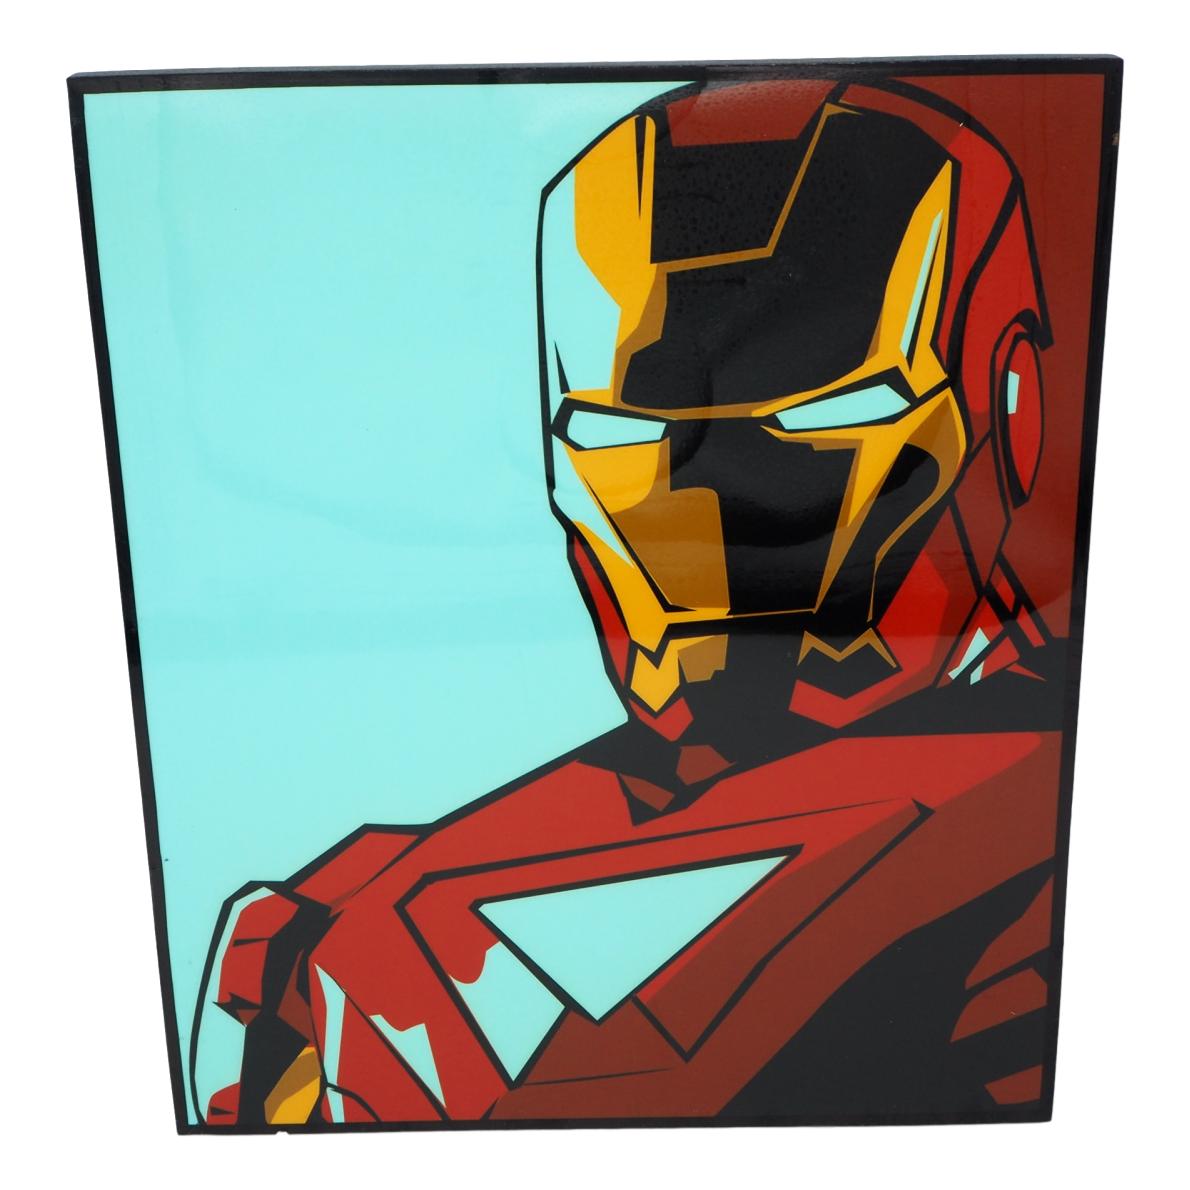 楽天市場 送料無料 アイアンマン Iron Man アートパネル 据え置き 壁掛け アーティスト Popパネル インテリア アートフレーム ポスター インテリアアートパネル ポップアートパネル クール 面白い かっこいい アート 雑貨カフェ リビング 額縁 オシャレ マーベル